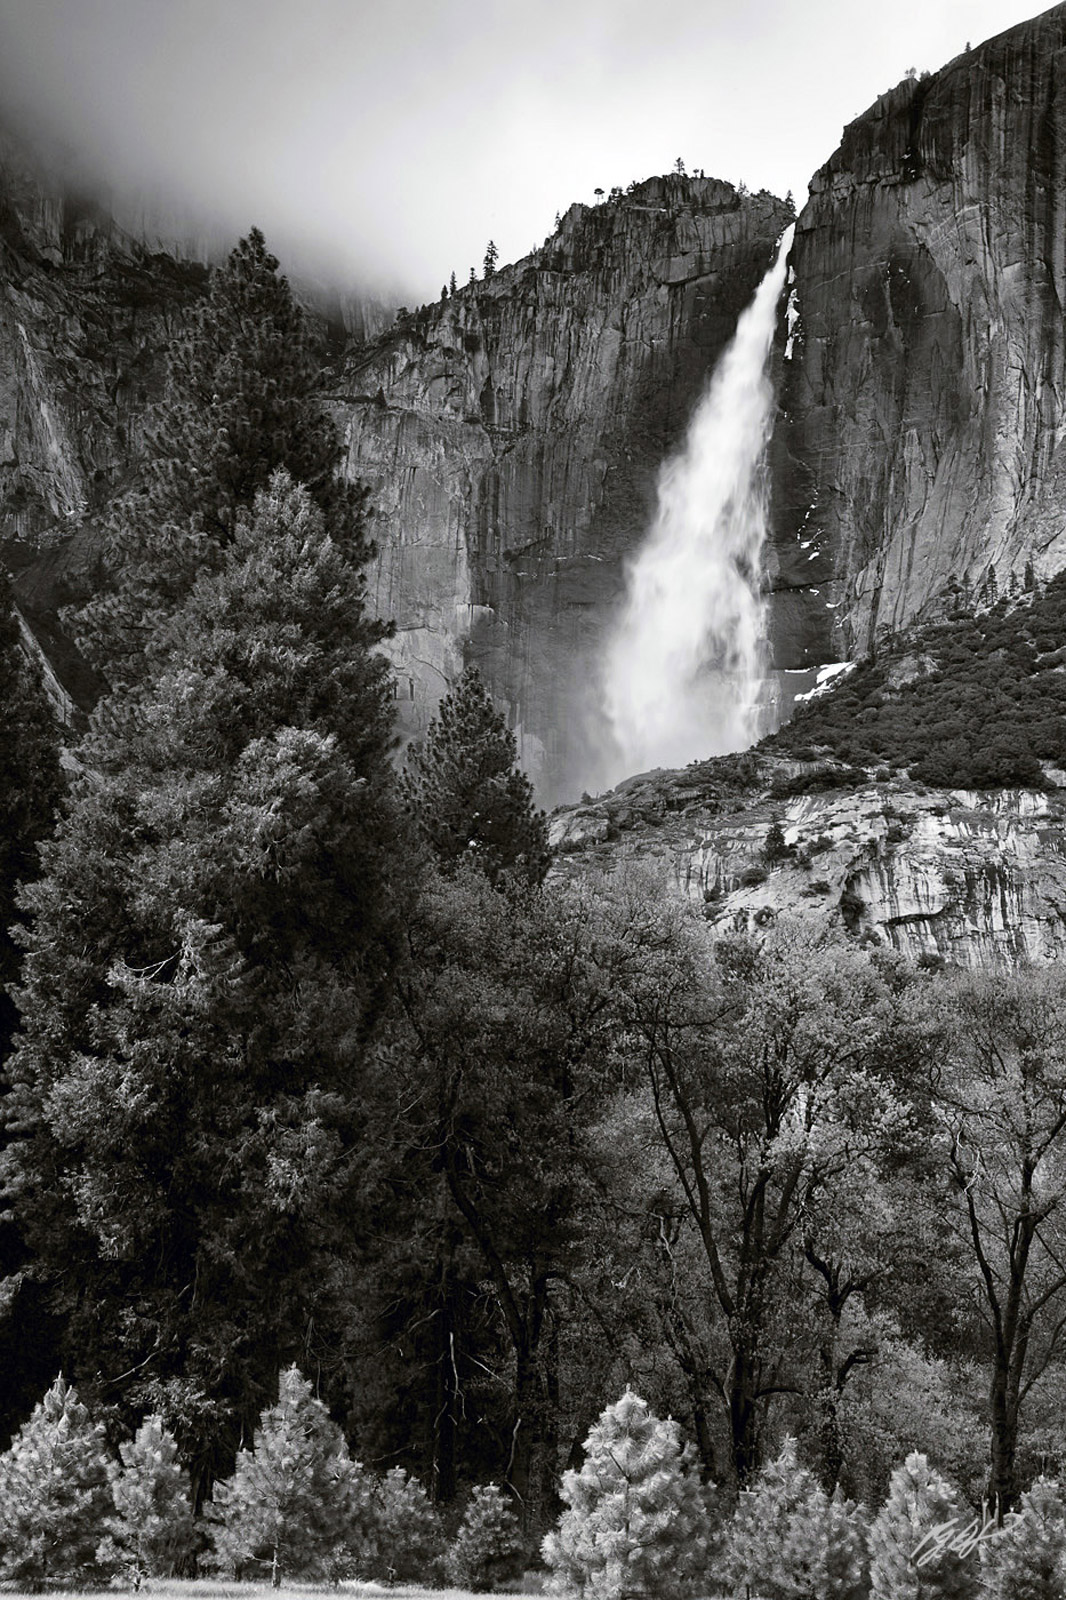 Yosemite Falls in Yosemite National Park in California